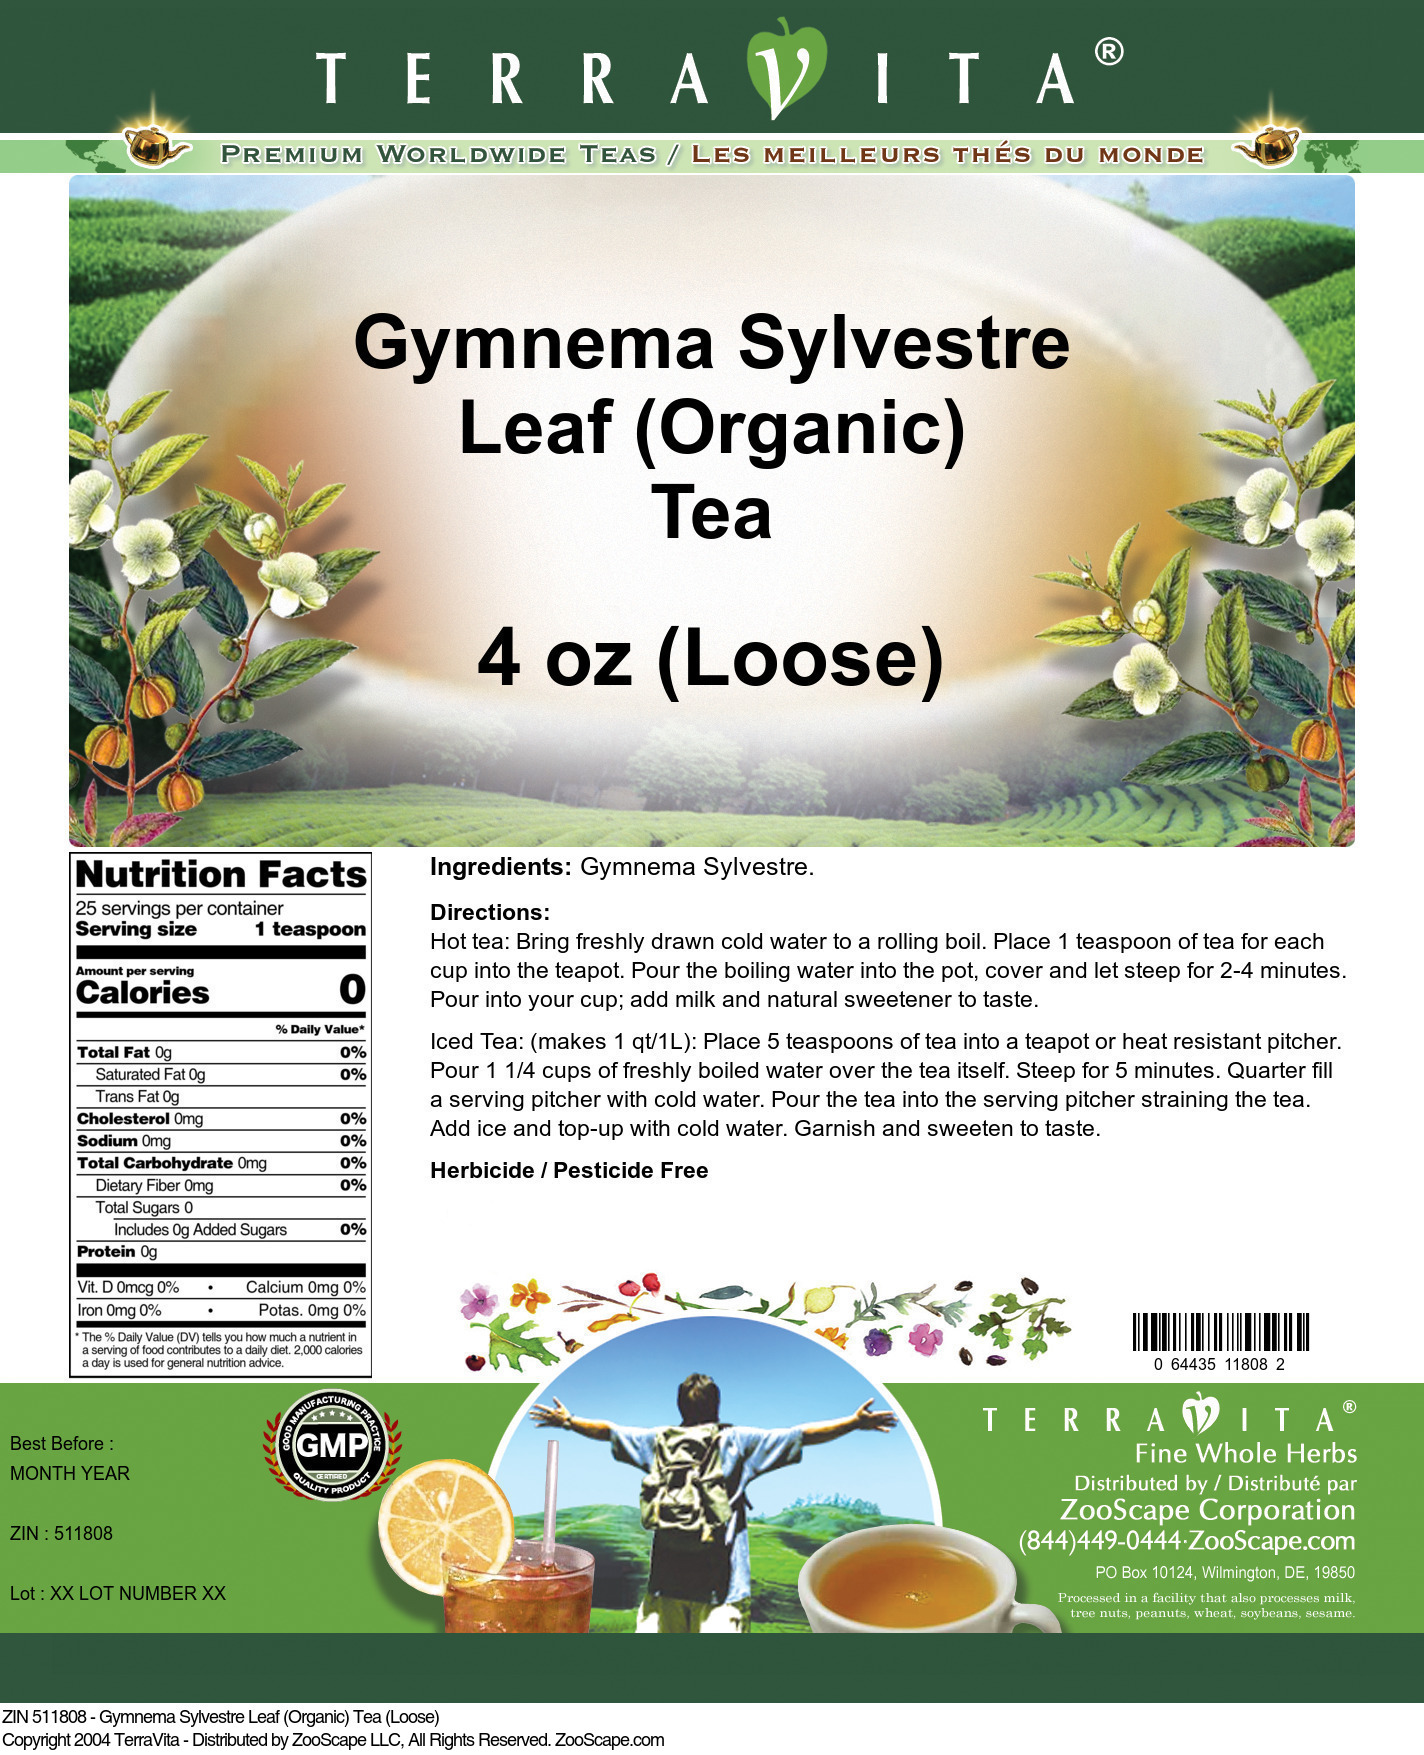 Gymnema Sylvestre Leaf (Organic) Tea (Loose) - Label